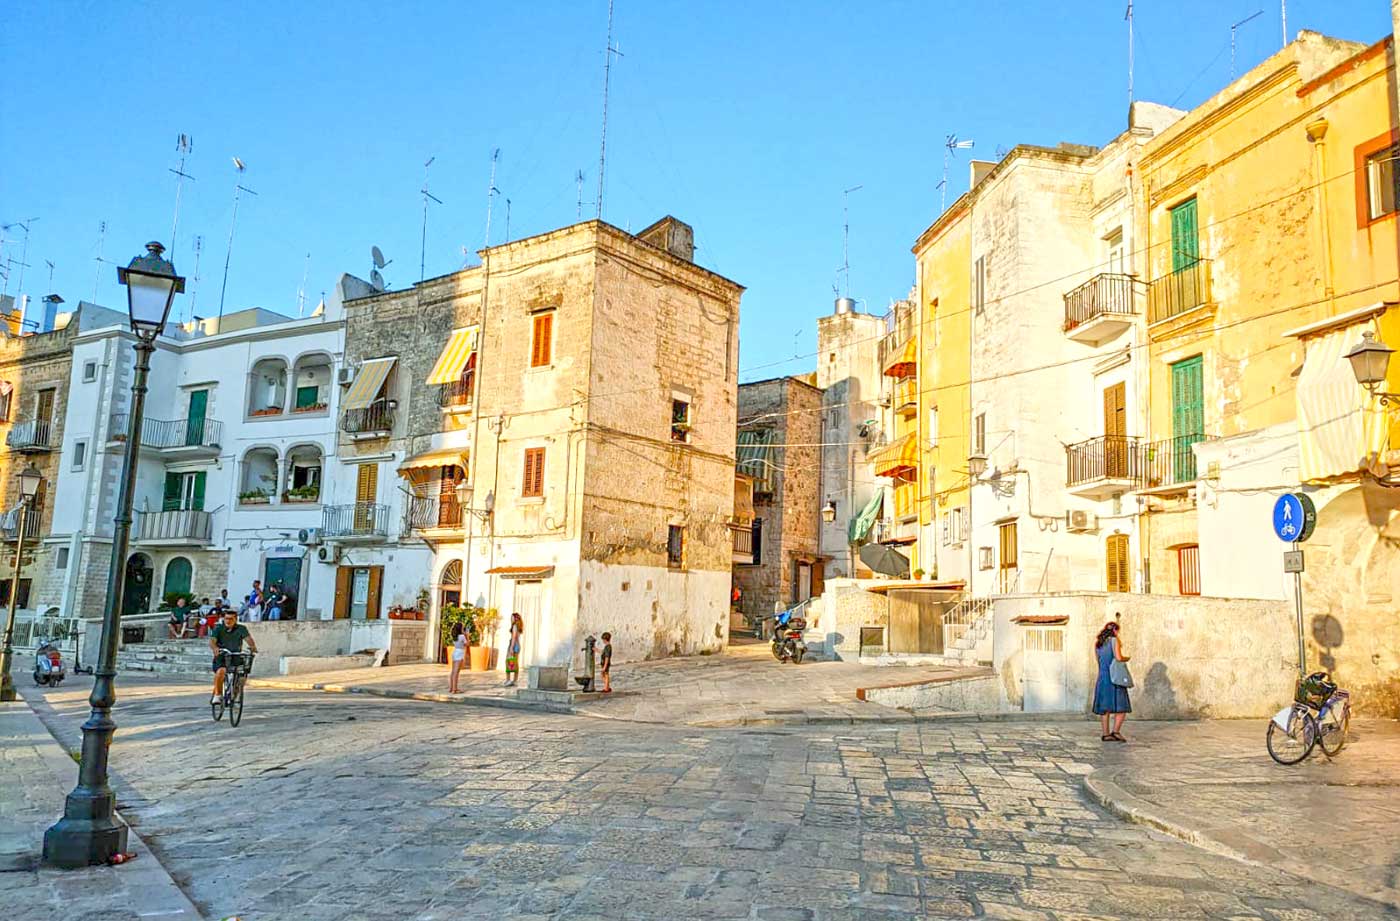 Bari Vecchia (Old Town)